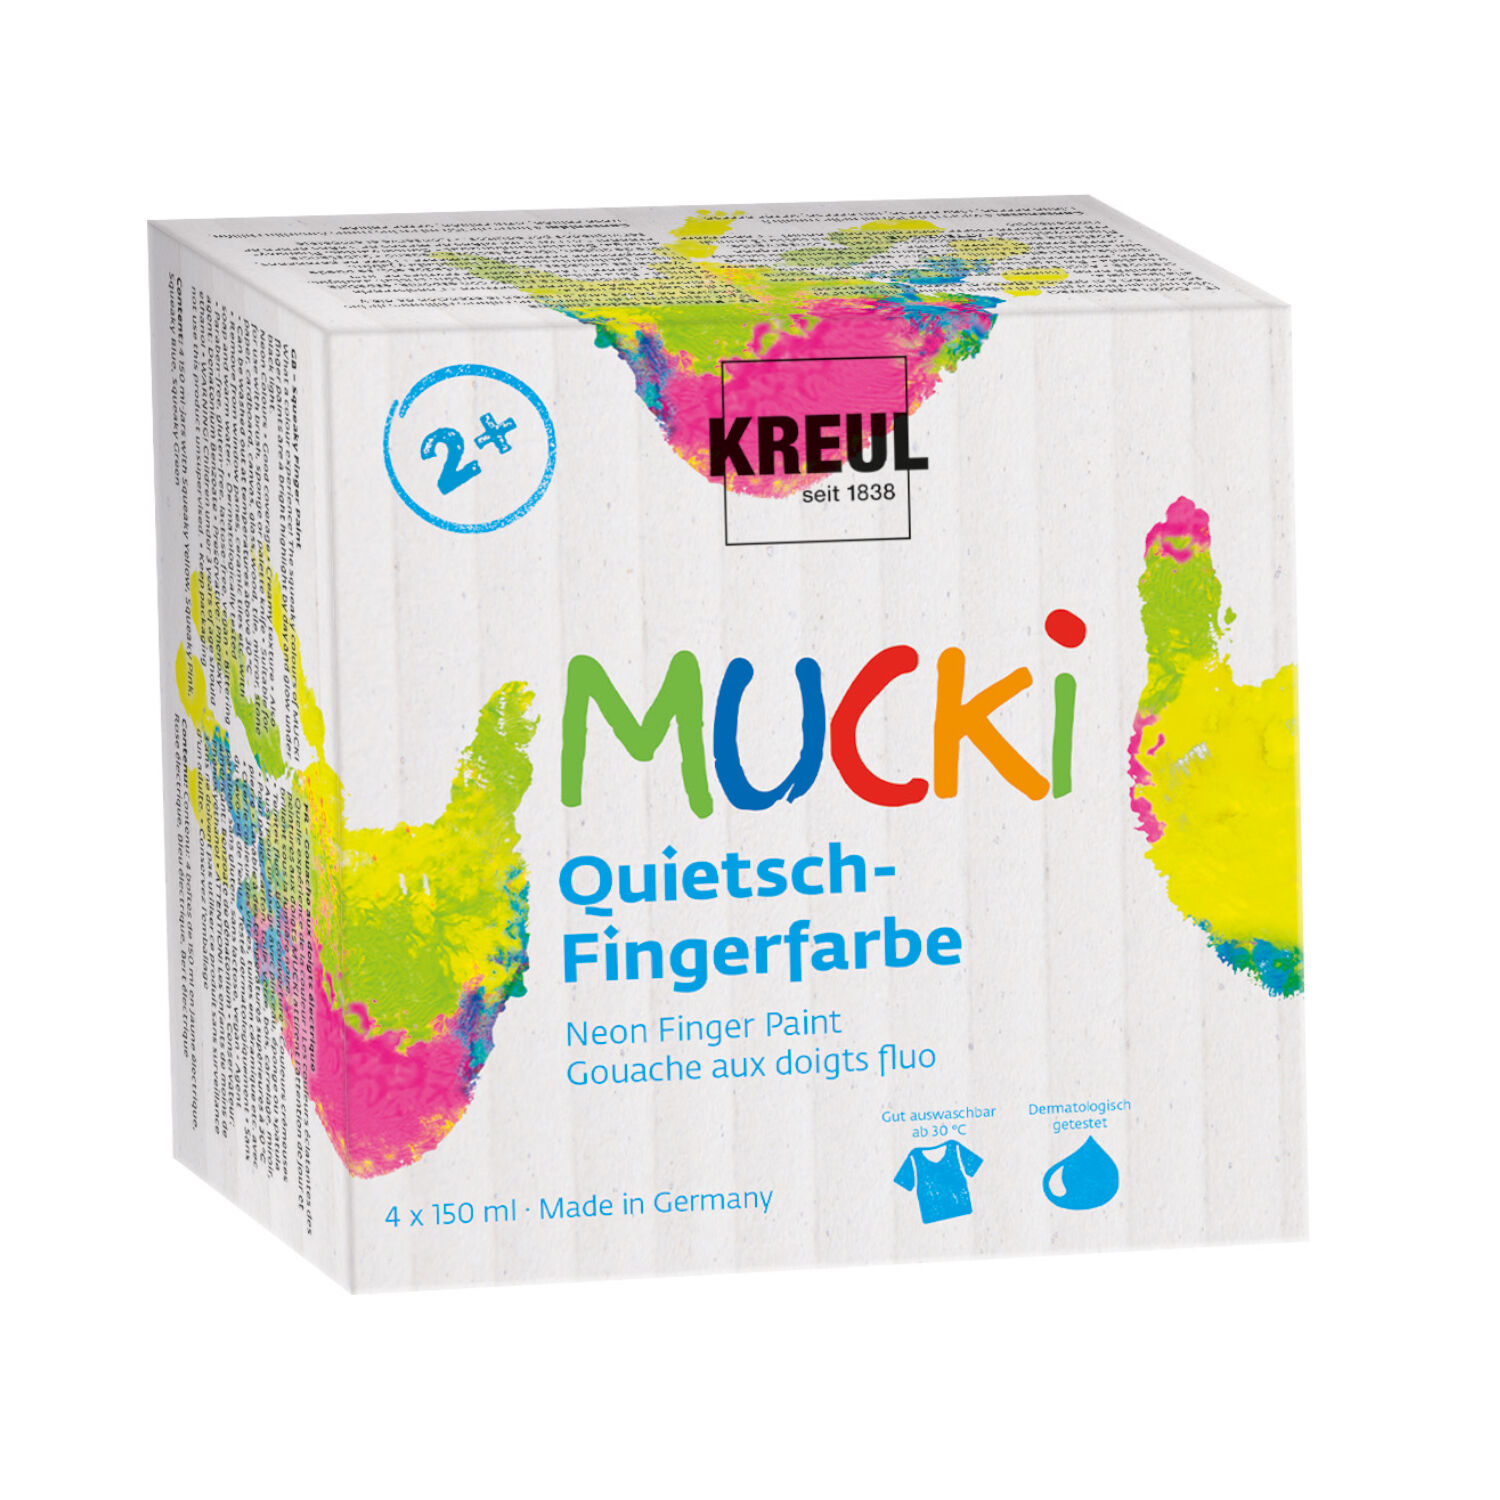 NEU MUCKI Quietsch-Fingerfarbe 4er Set 150 ml